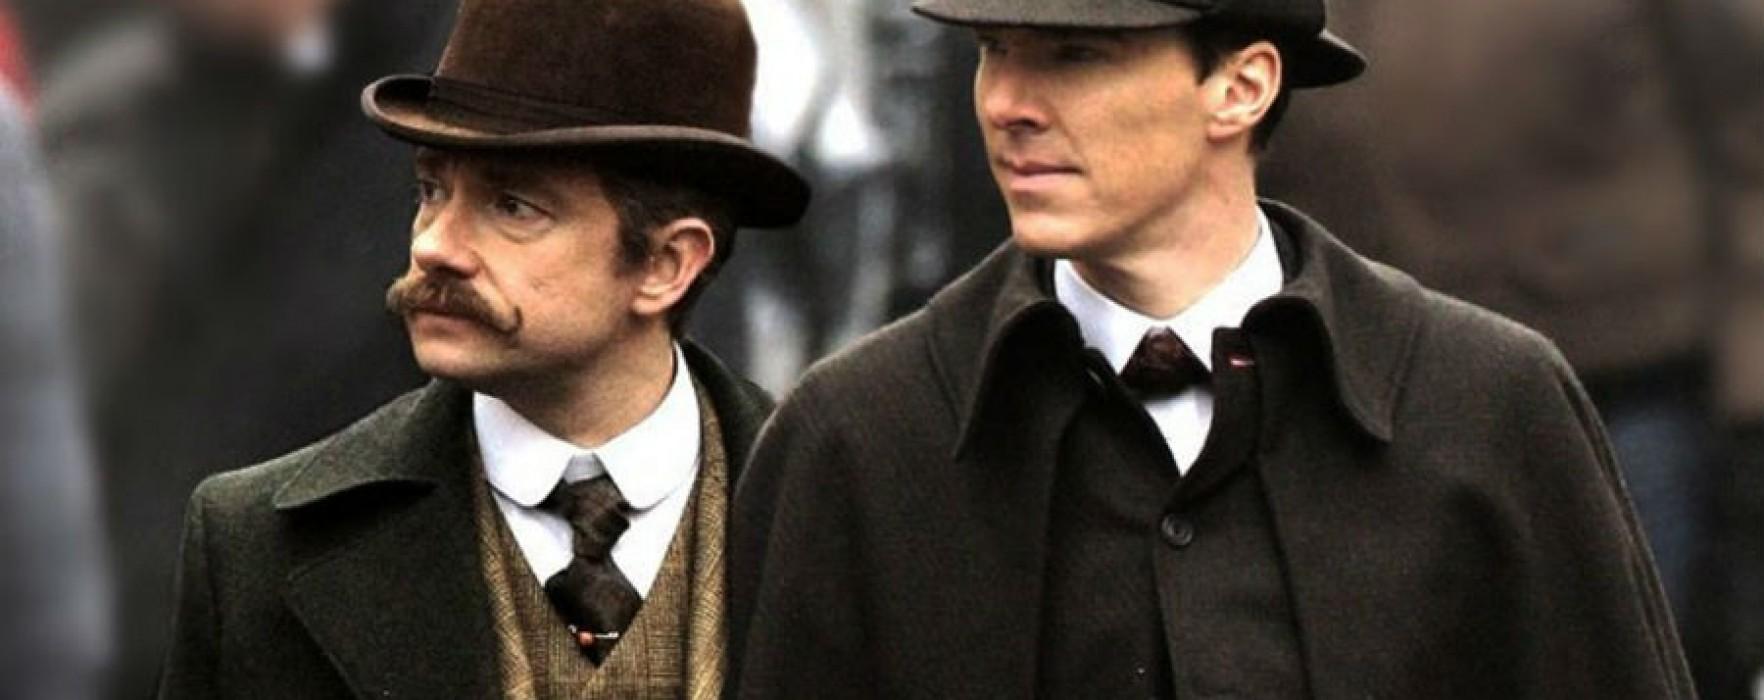 BCC divulga teaser, título e data do especial de Sherlock